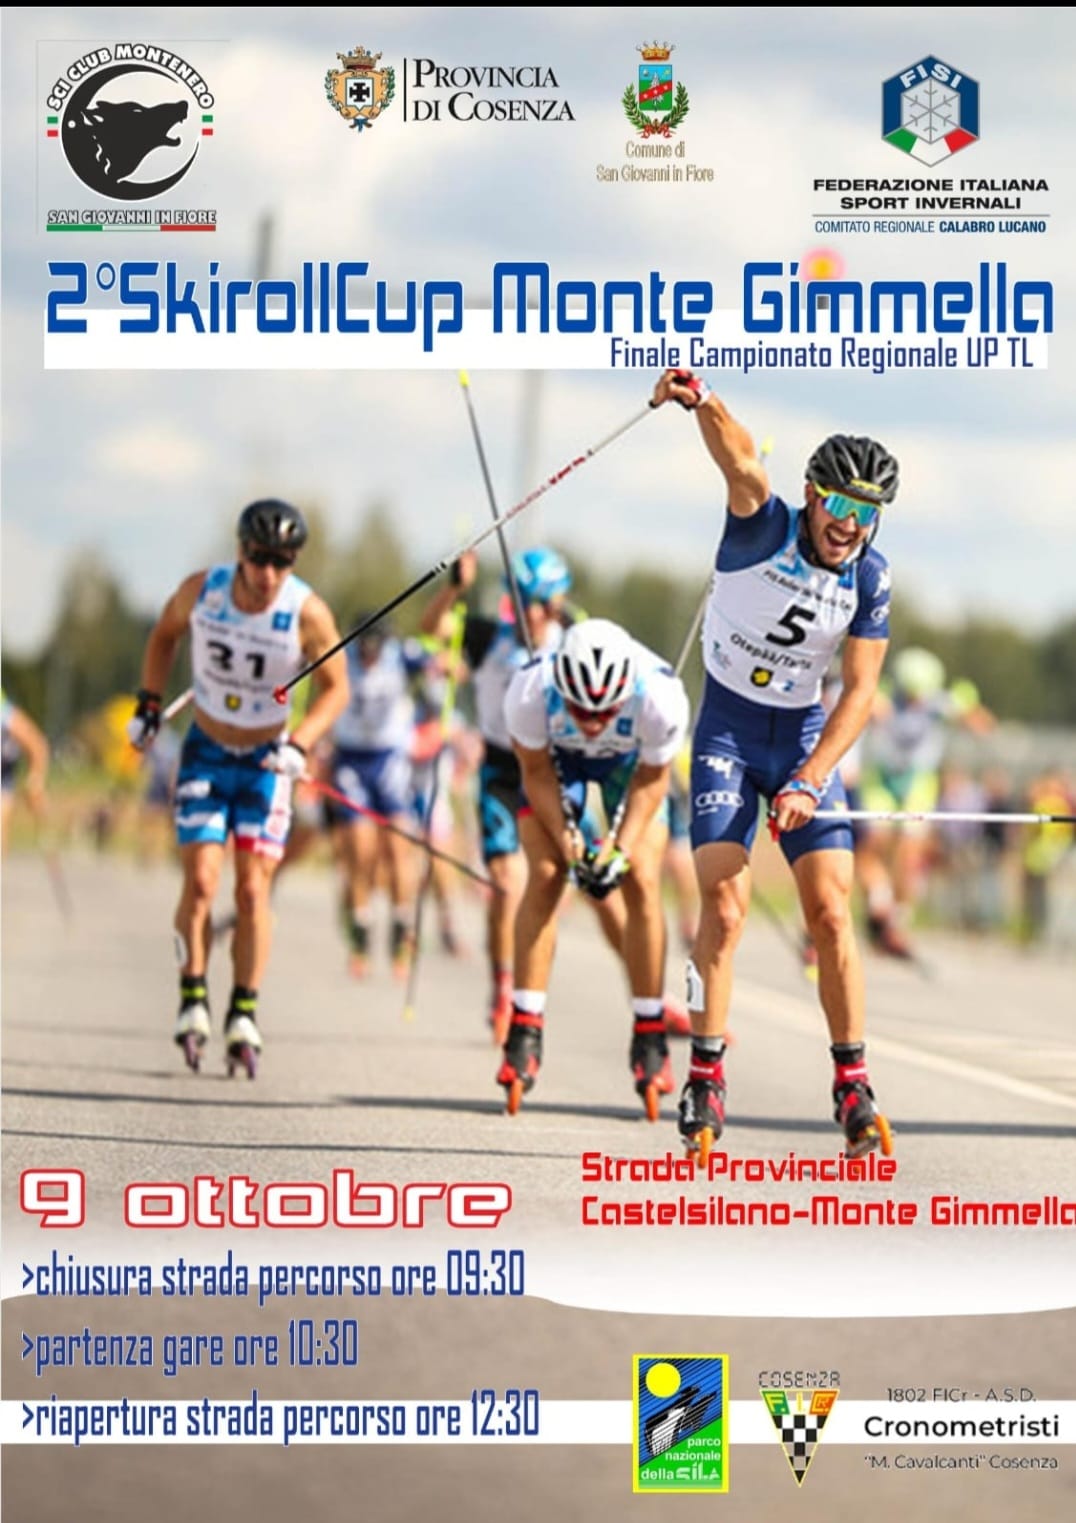 Domenica 9 ottobre al via il 2° Skiroll Cup Monte Gimmella